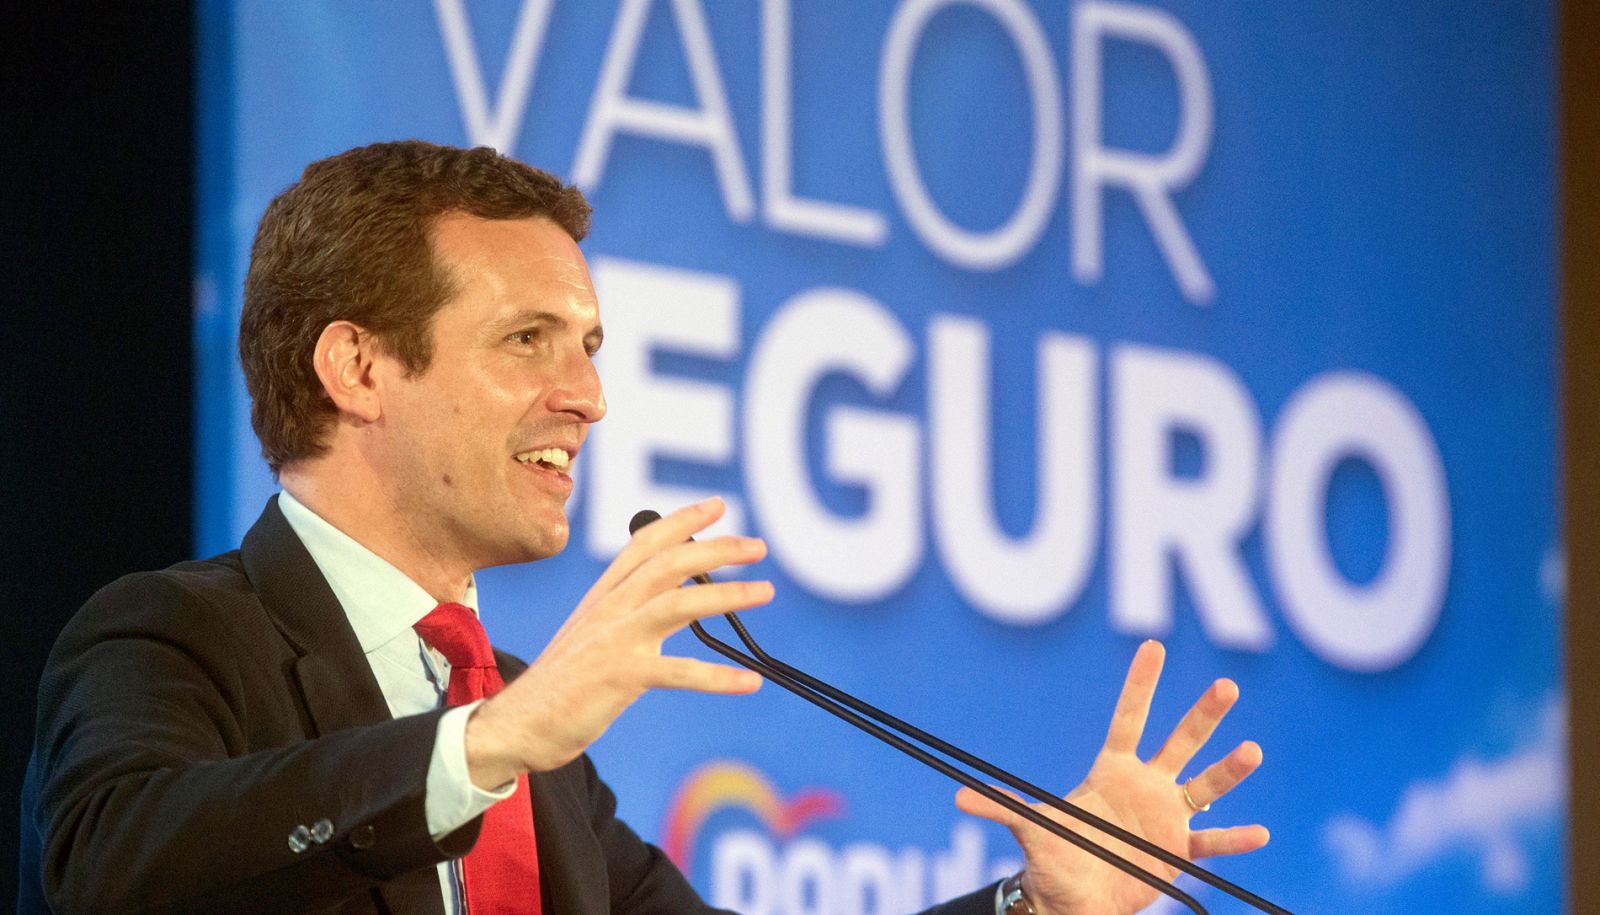 Los candidatos intensifican sus actos en Galicia, Andalucía y Barcelona el penúltimo día de campaña